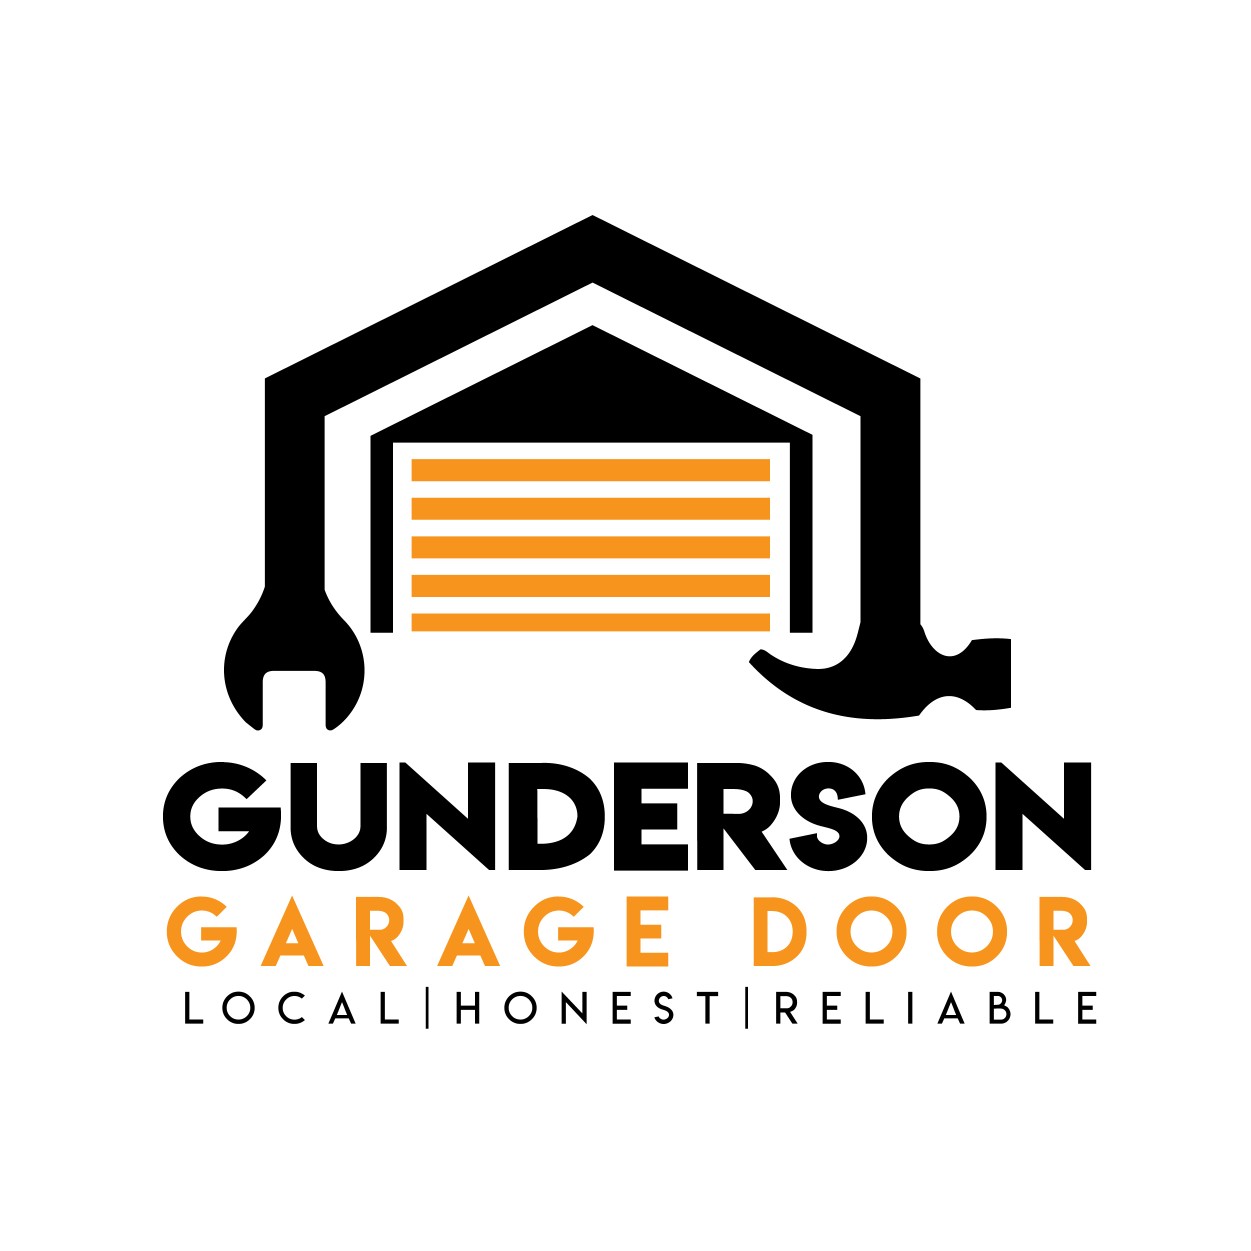 Gunderson Garage Door